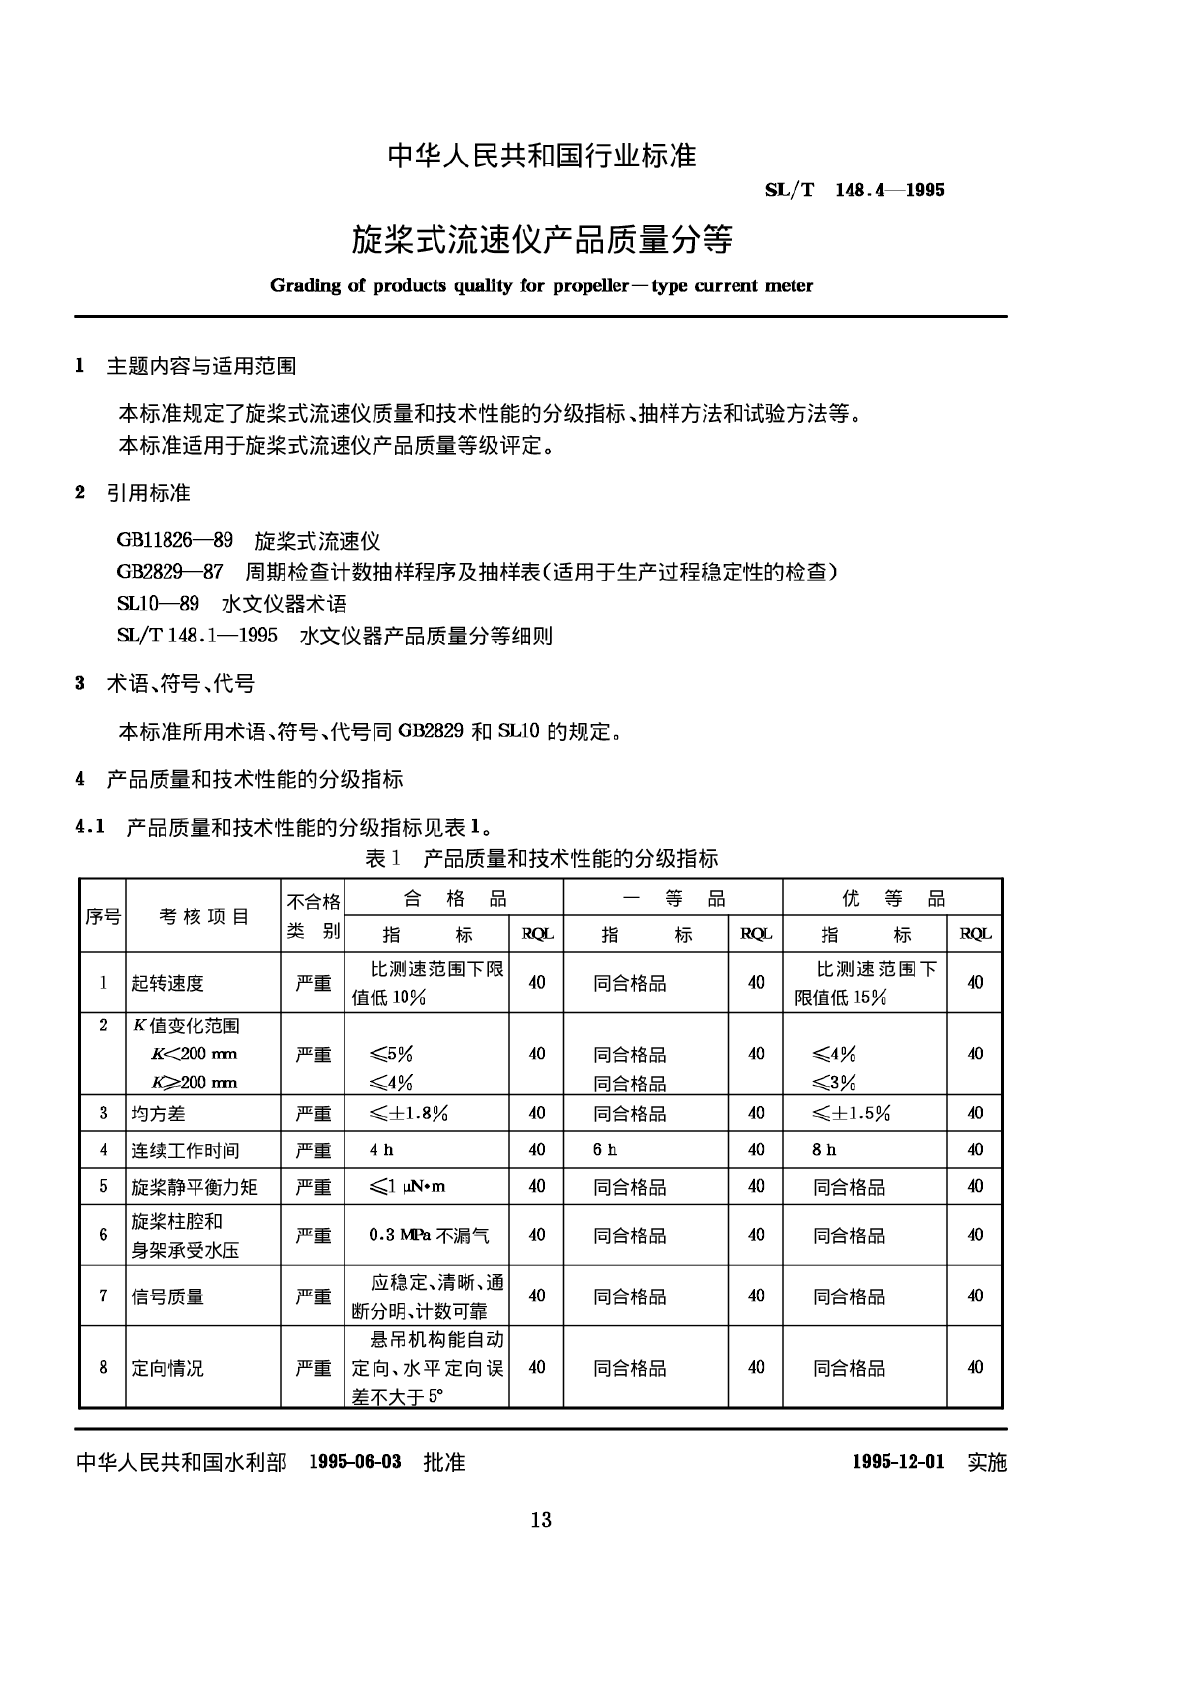 SLT 148.4-1995 旋桨式流速仪产品质量分等-图一